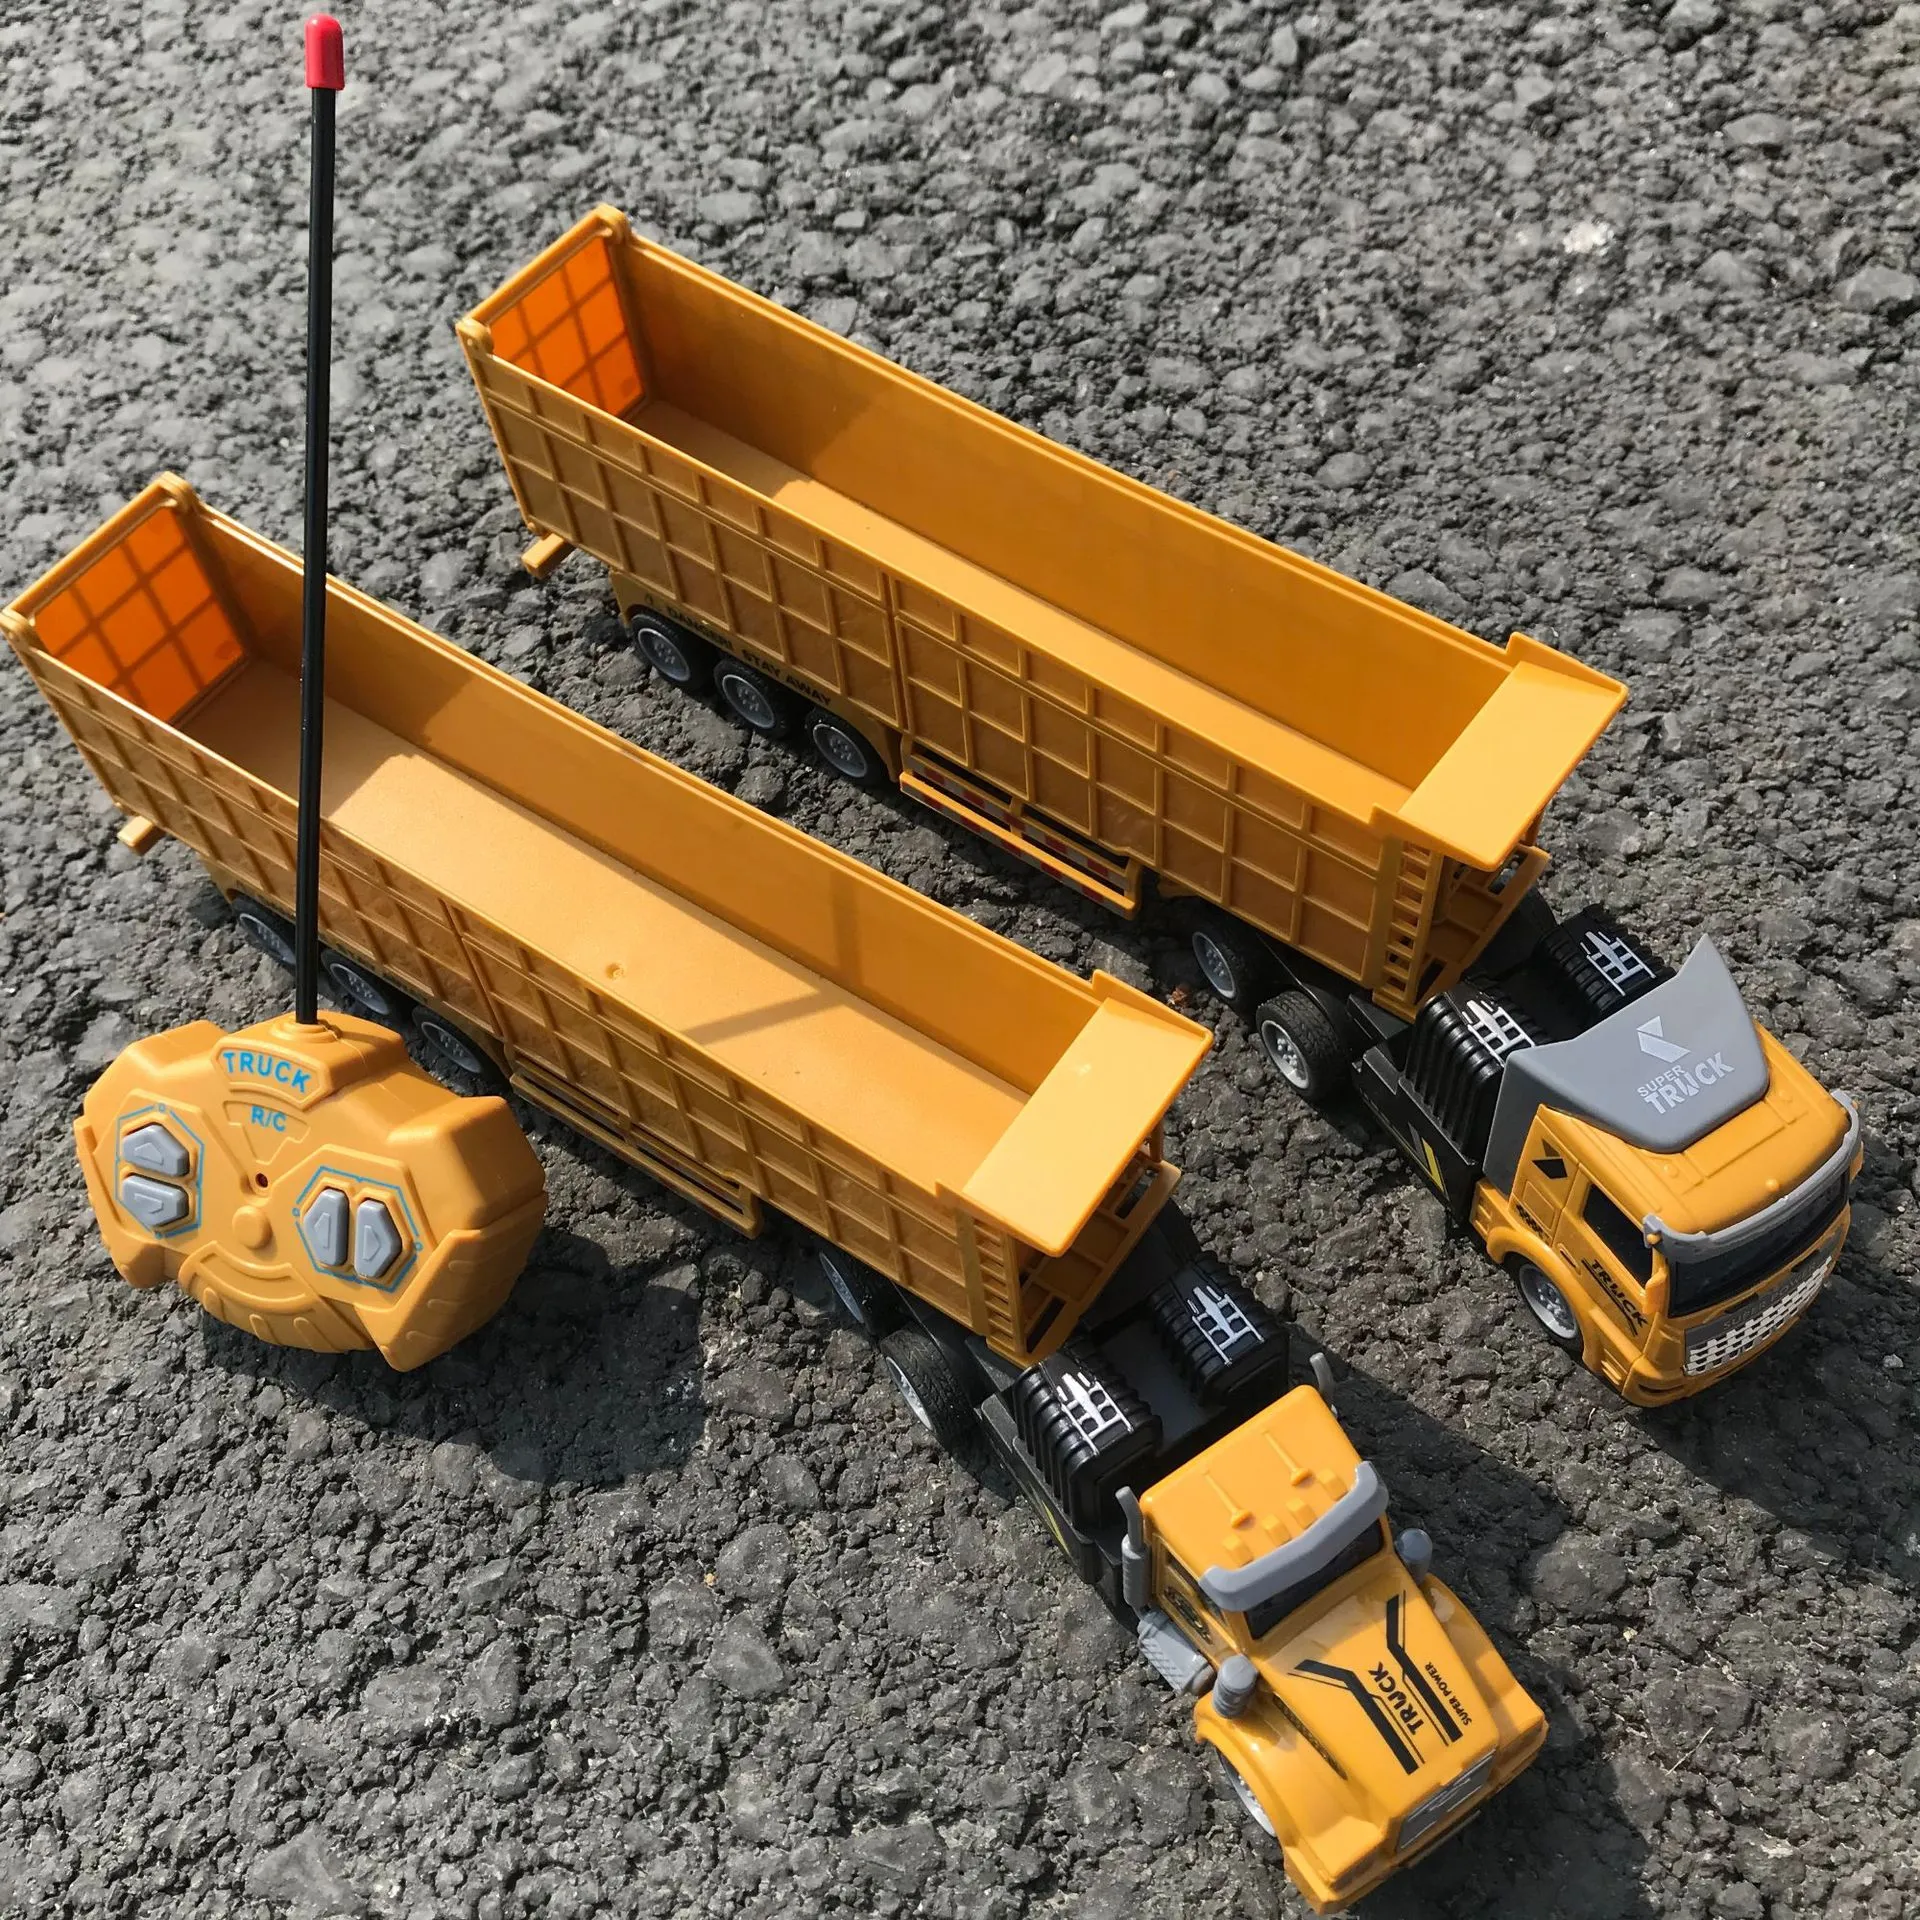 2.4G 6CH télécommande véhicule d'ingénierie à chenilles bulldozer camion  jouet - Chine Voiture de camion RC et camion de jouets RC prix